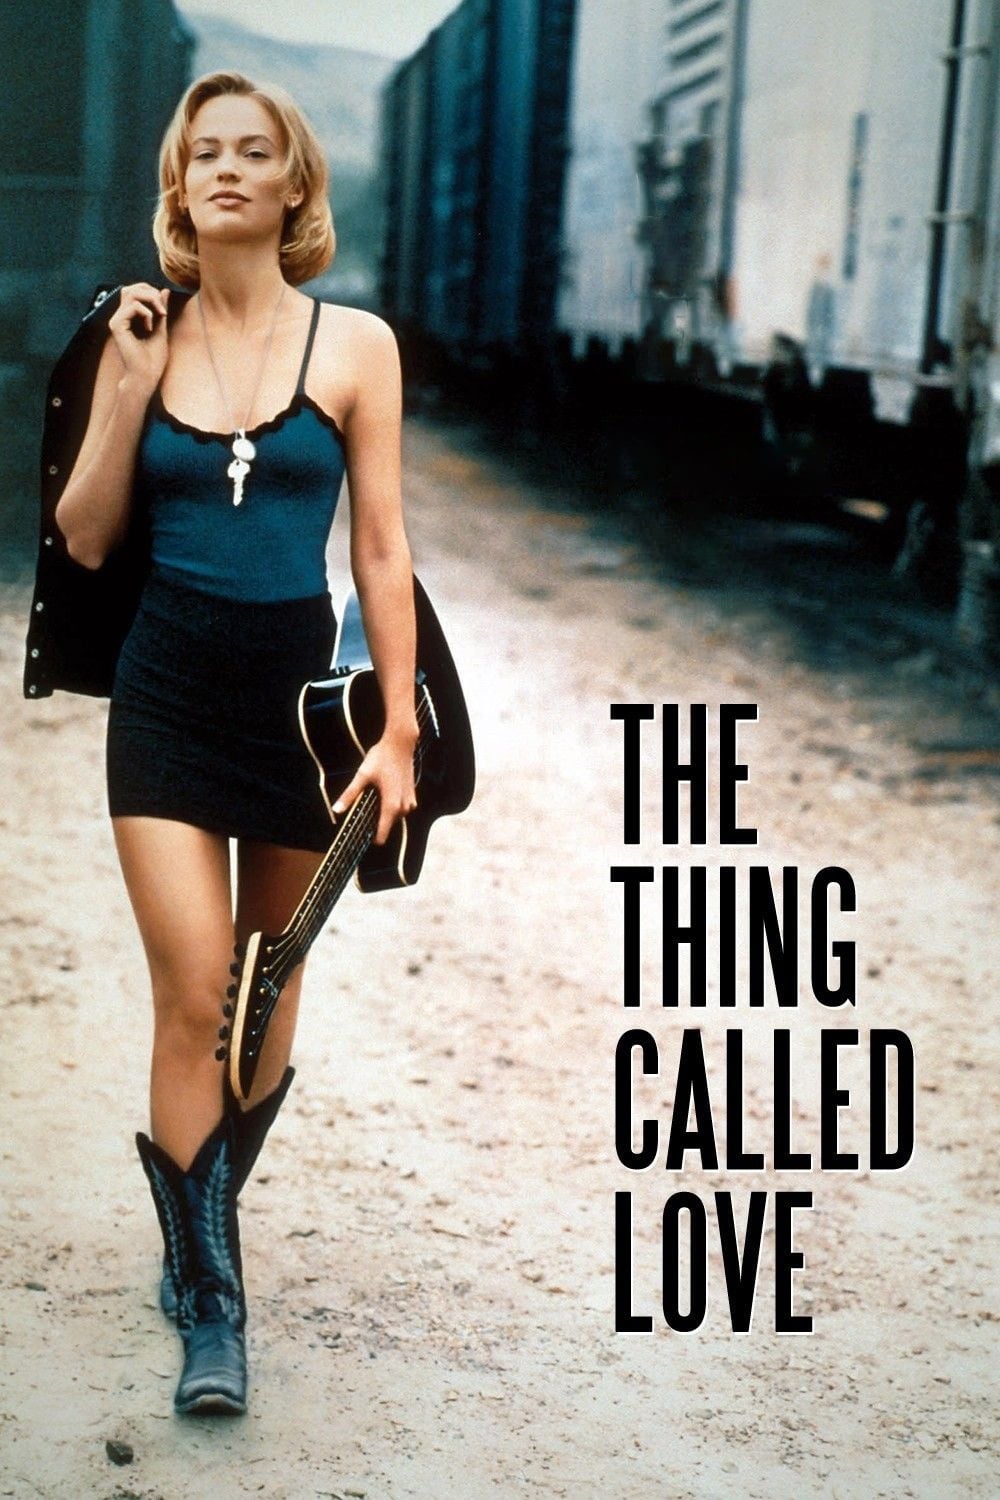 The Thing called Love - Die Entscheidung fürs Leben